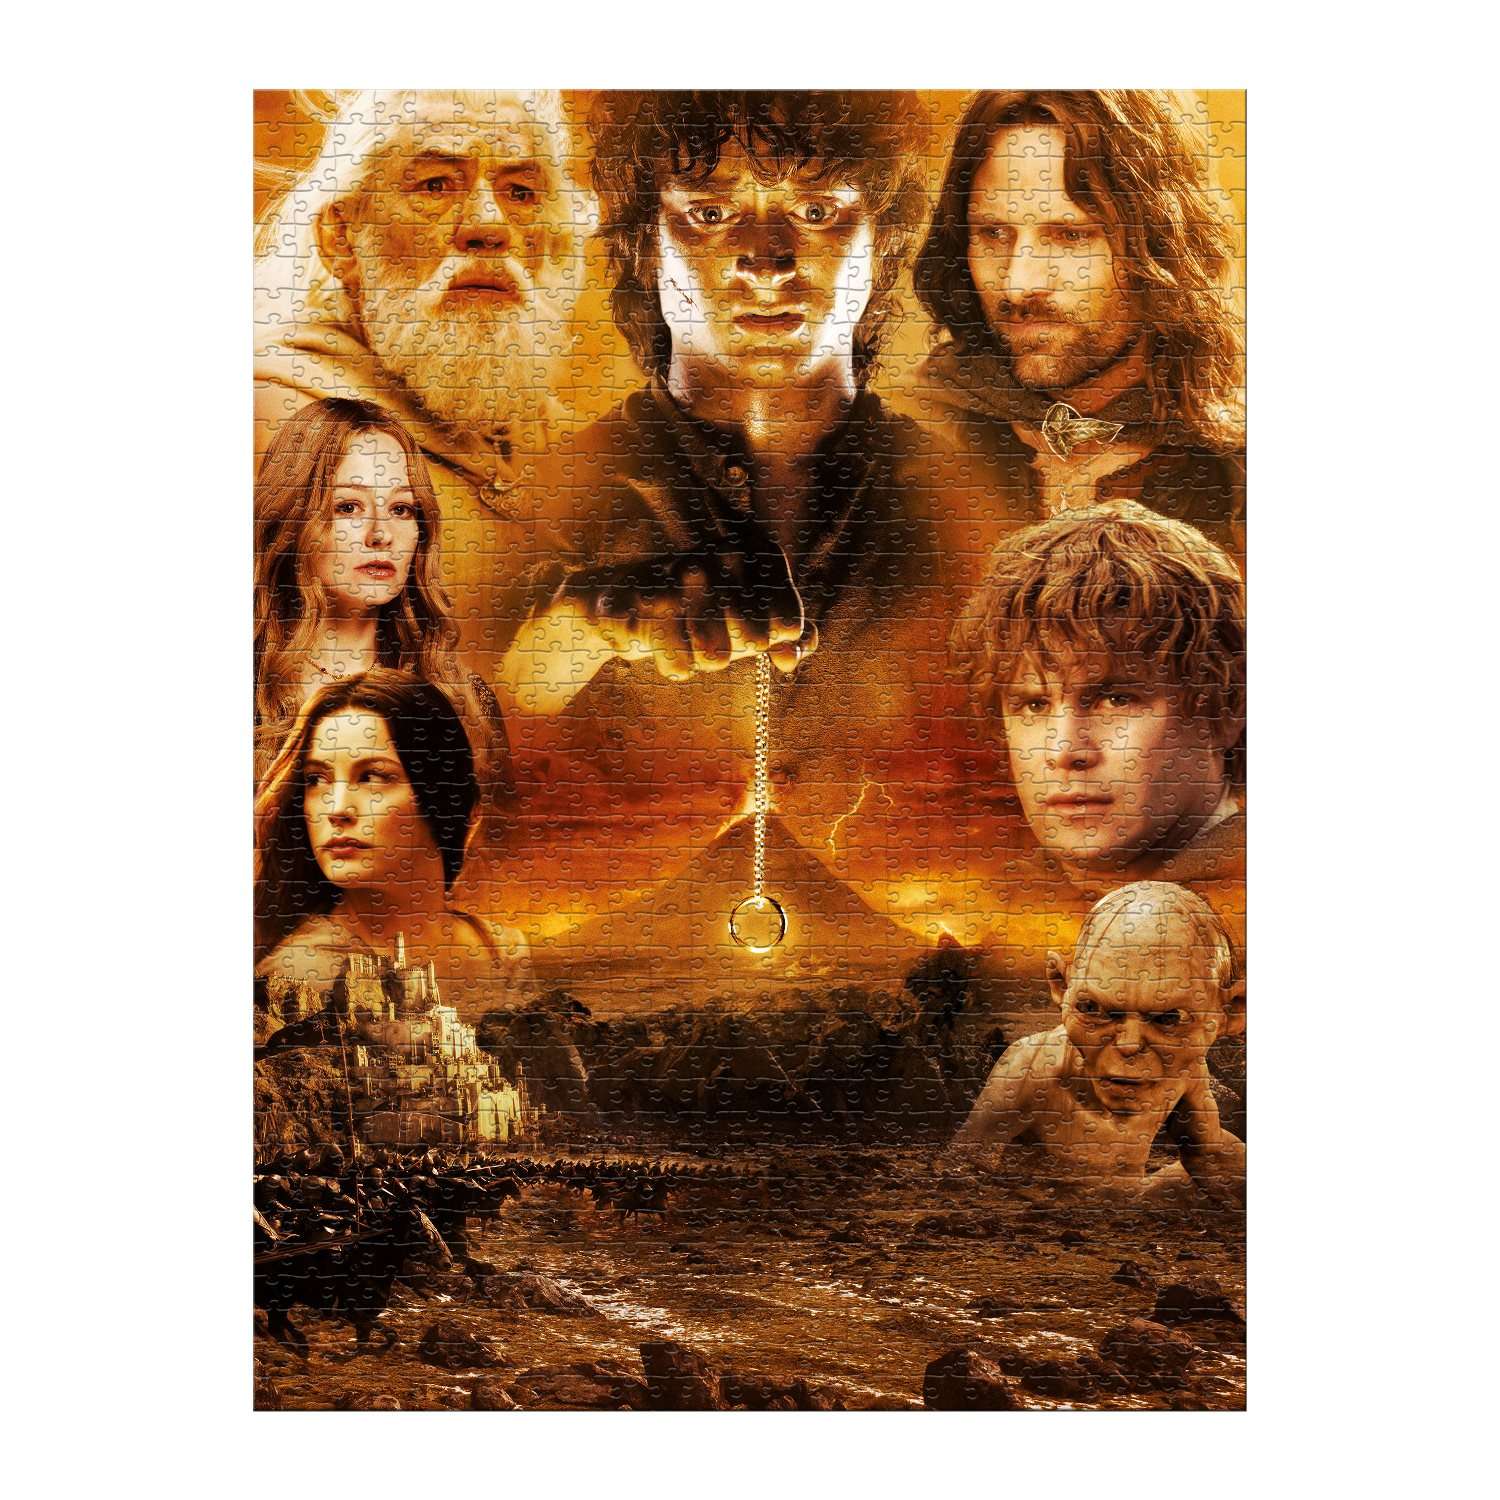 Пазл Winning Moves Lord of the Rings Властелин колец роковая гора 1000 деталей - фото 2